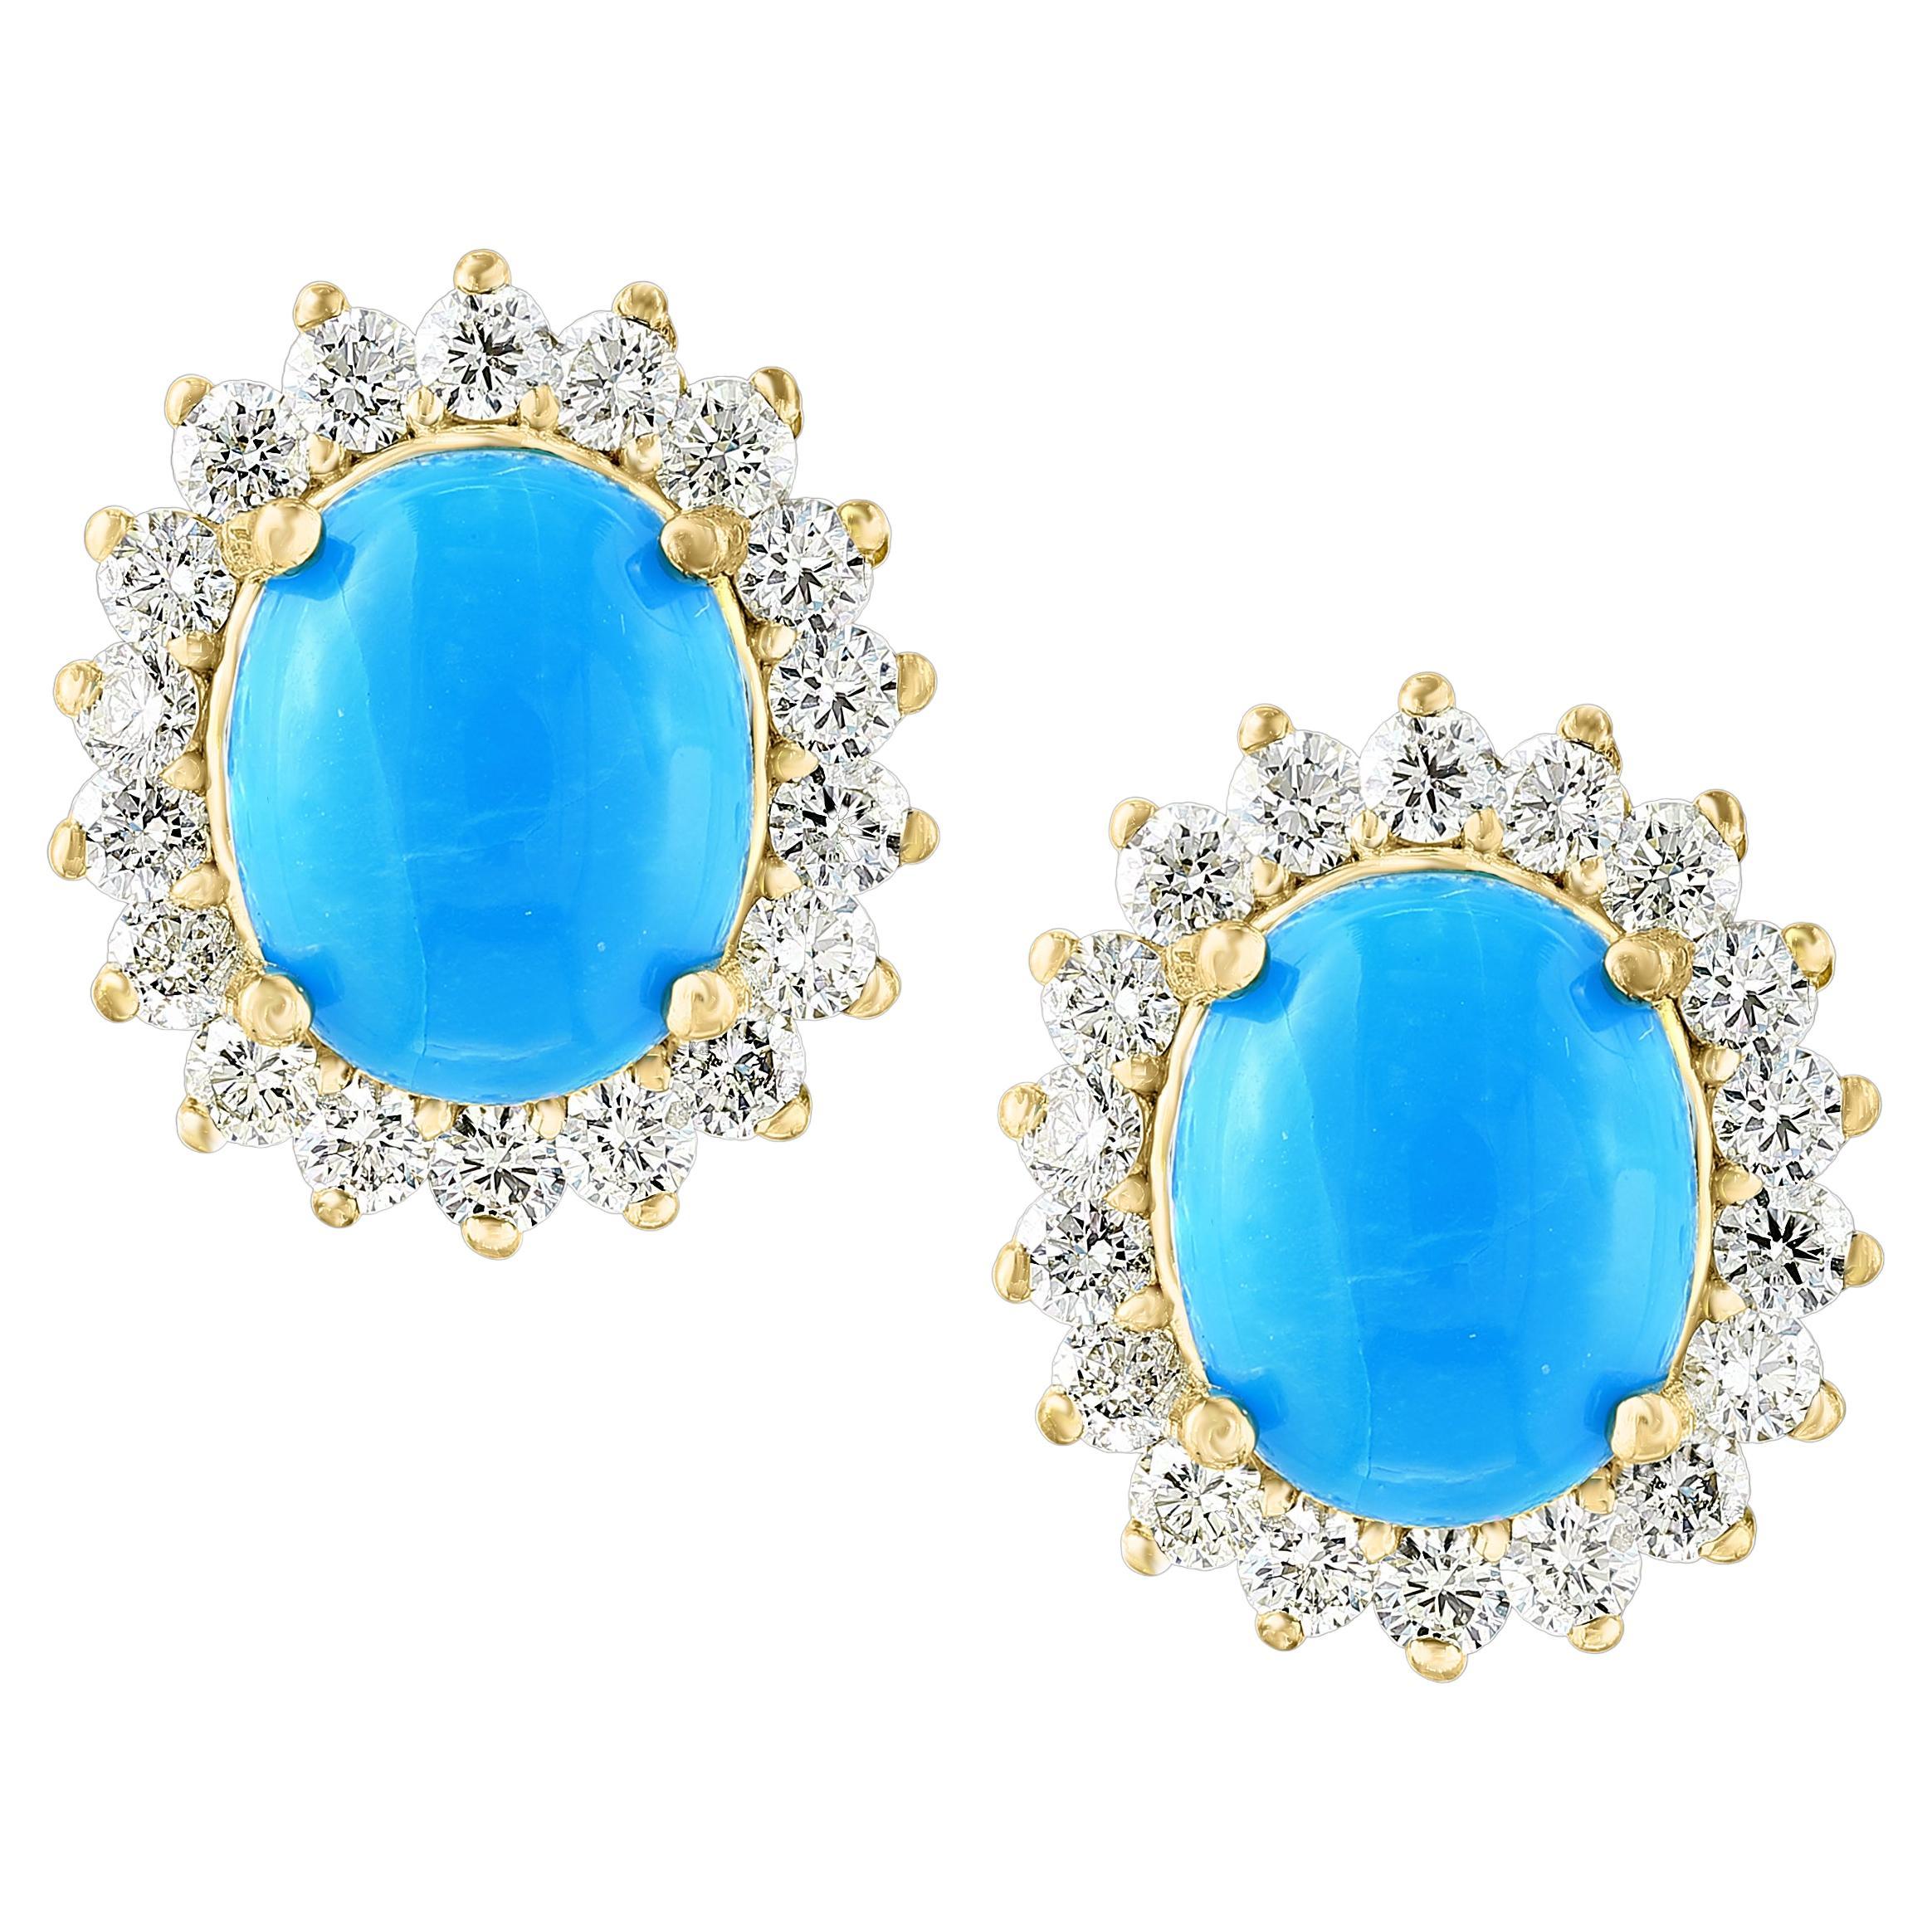 8 Ct Oval Sleeping Beauty Turquoise 1.5ct Diamond Stud Earrings 14 K Yellow Gold